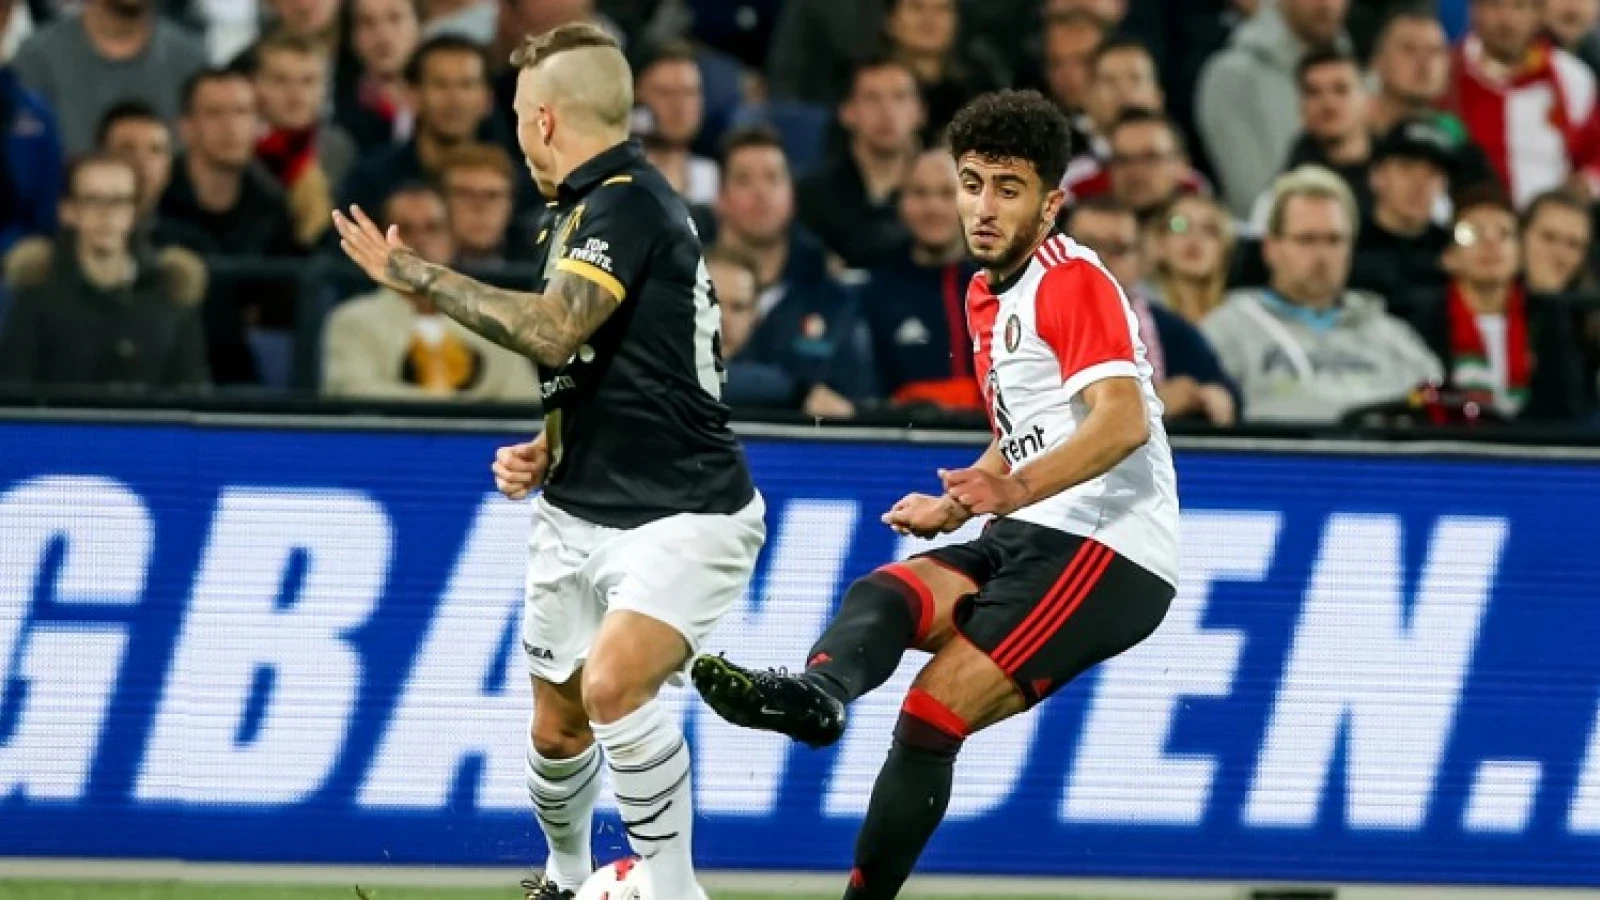 LIVE | Feyenoord - NAC Breda 0-2 | Einde wedstrijd